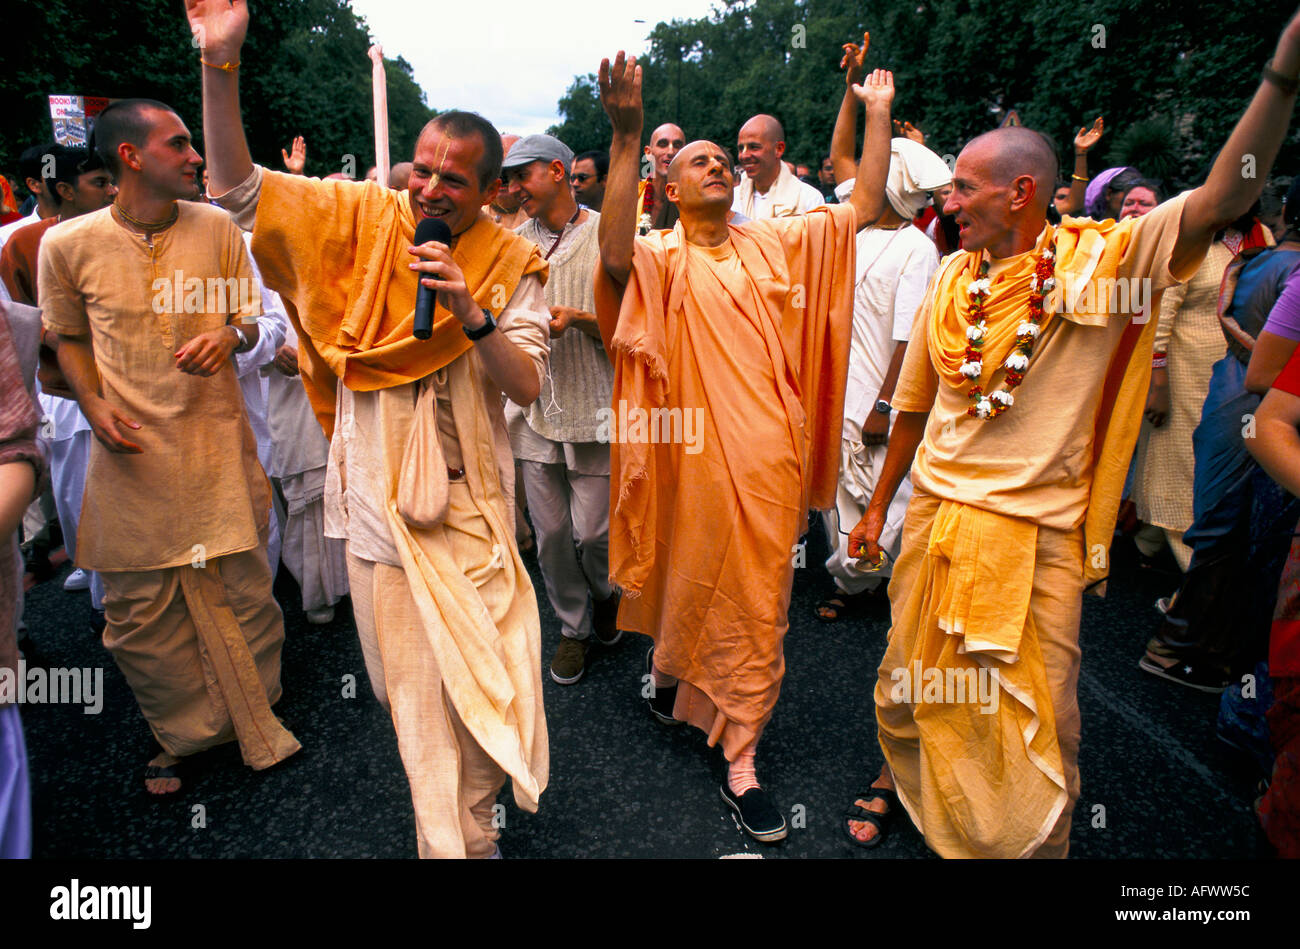 Mouvement Hare Krishna. Hindou Rathayatra ou festival chariot. Danse de dévot célébrer alors qu'ils marchent sur Park Lane Londres années 2004 2000 Royaume-Uni HOMER SYKES Banque D'Images